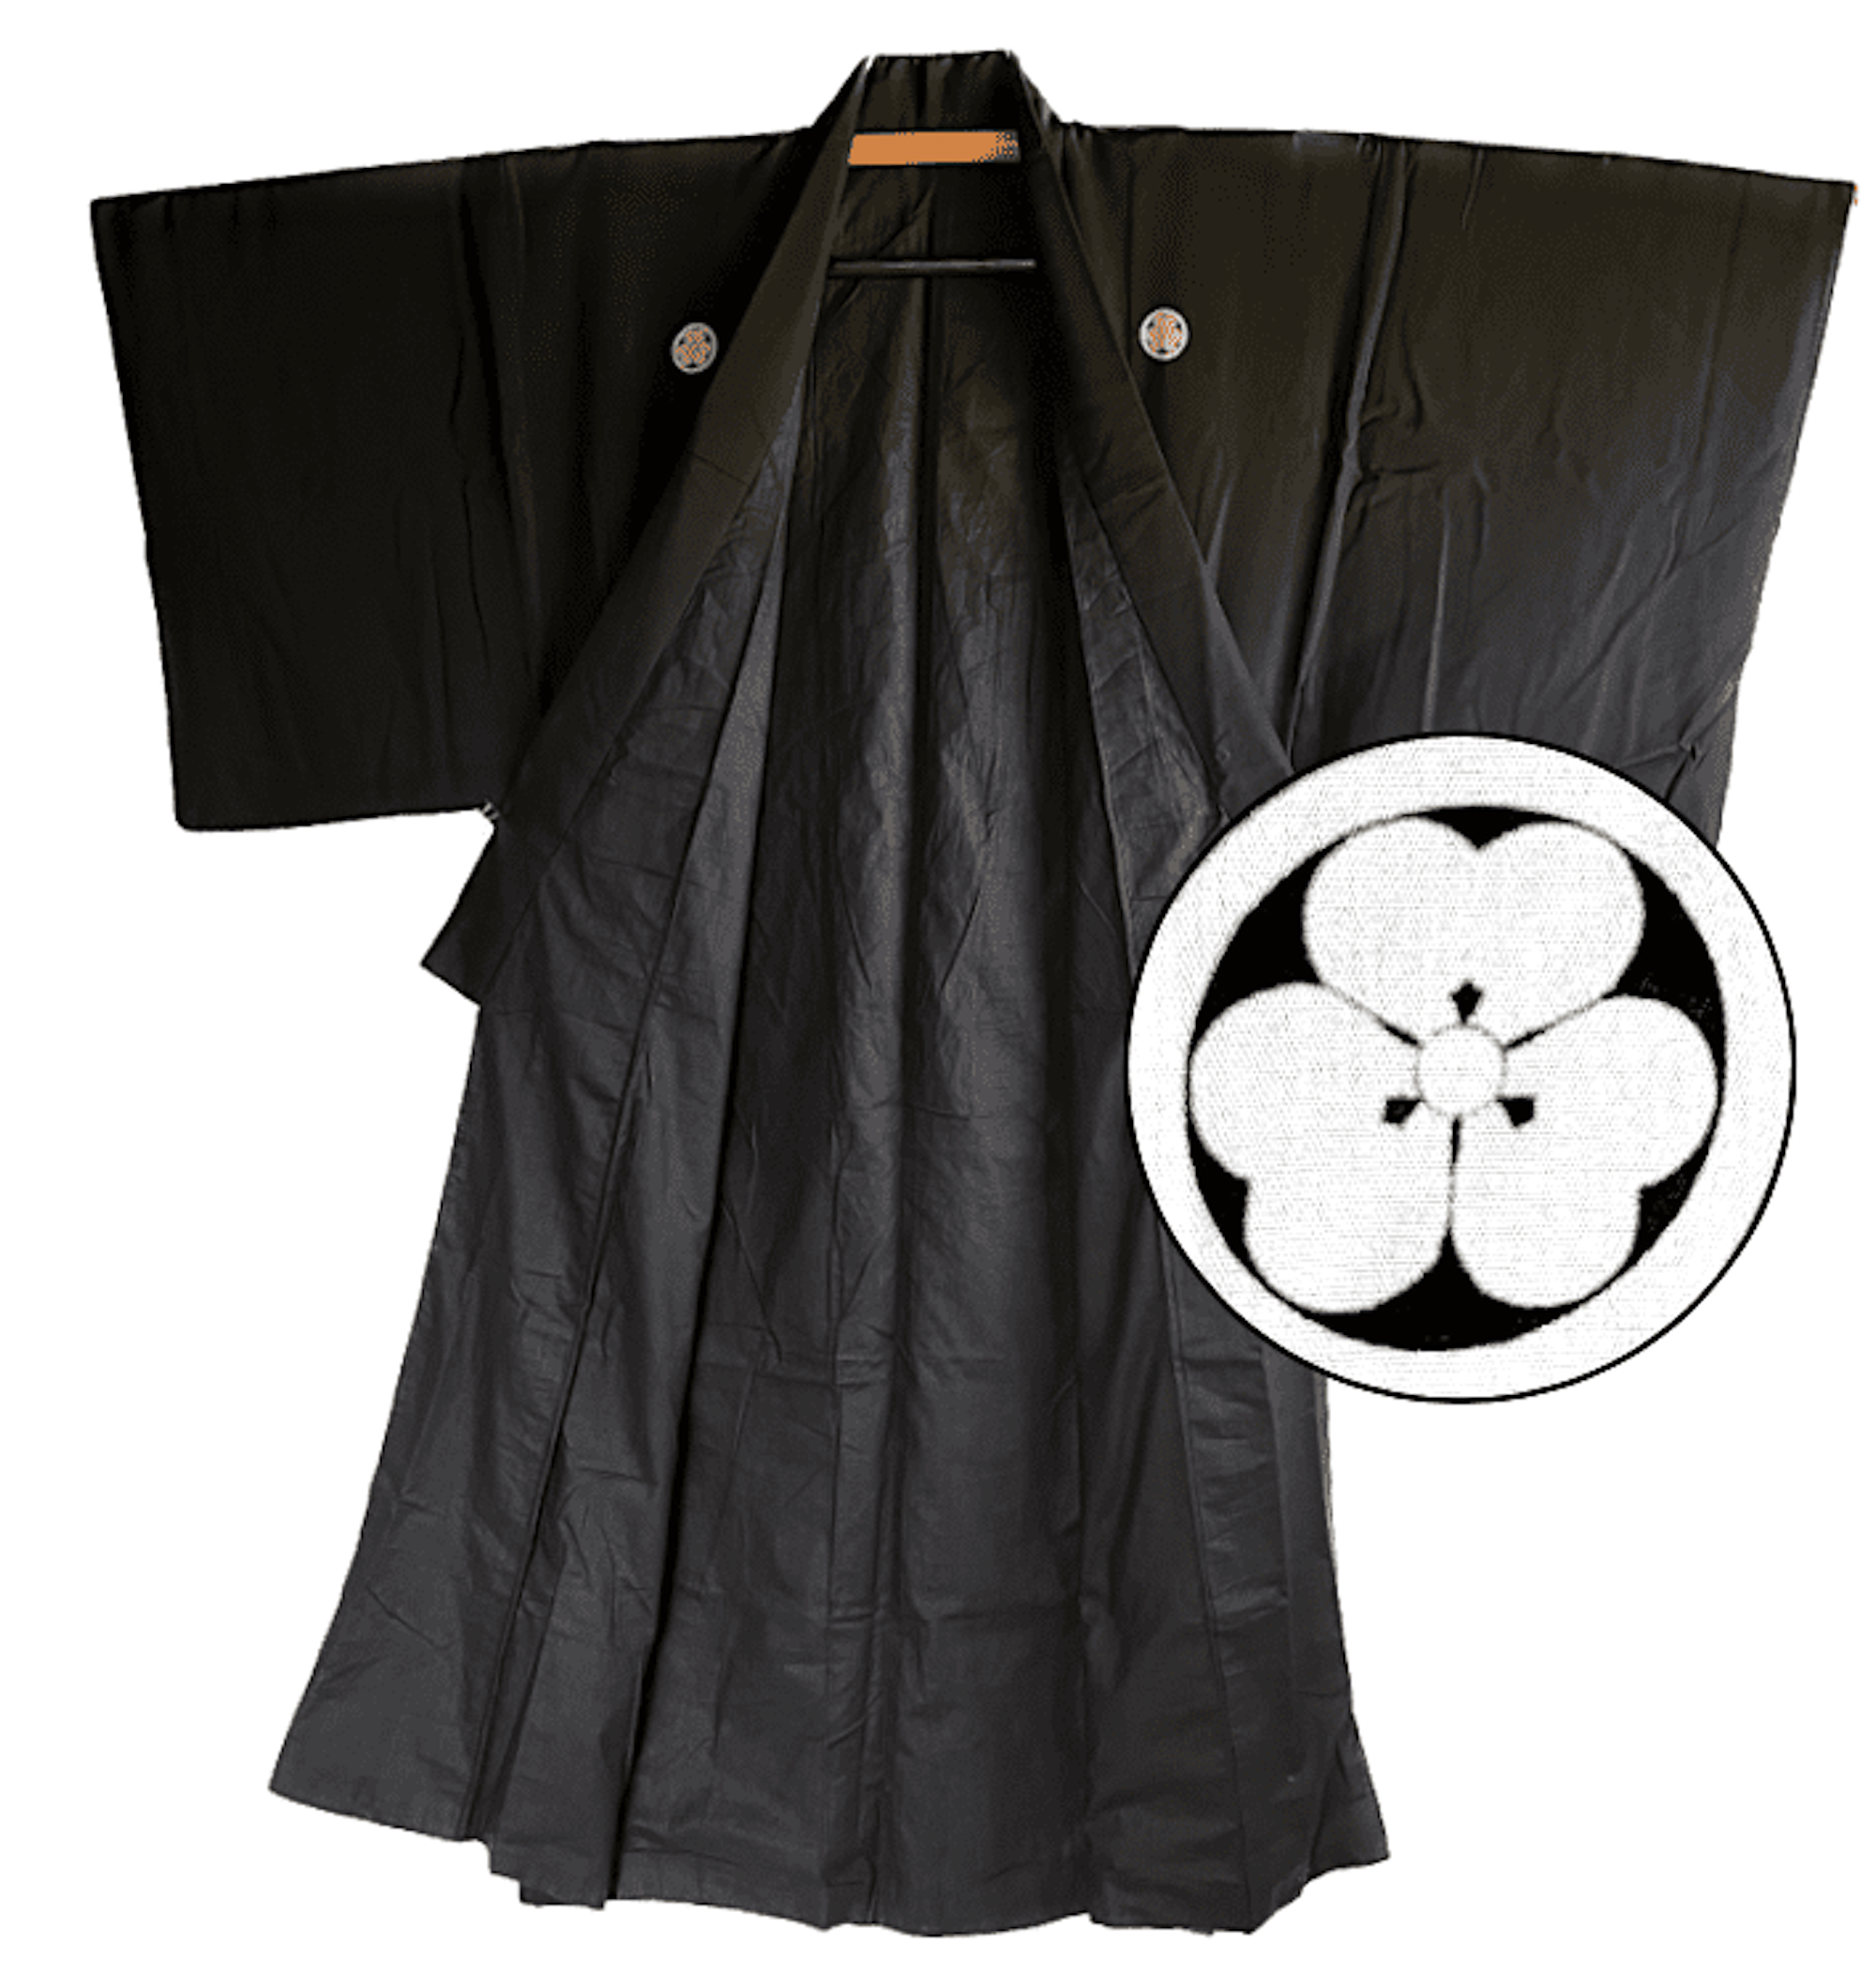 Japanese men's kimono